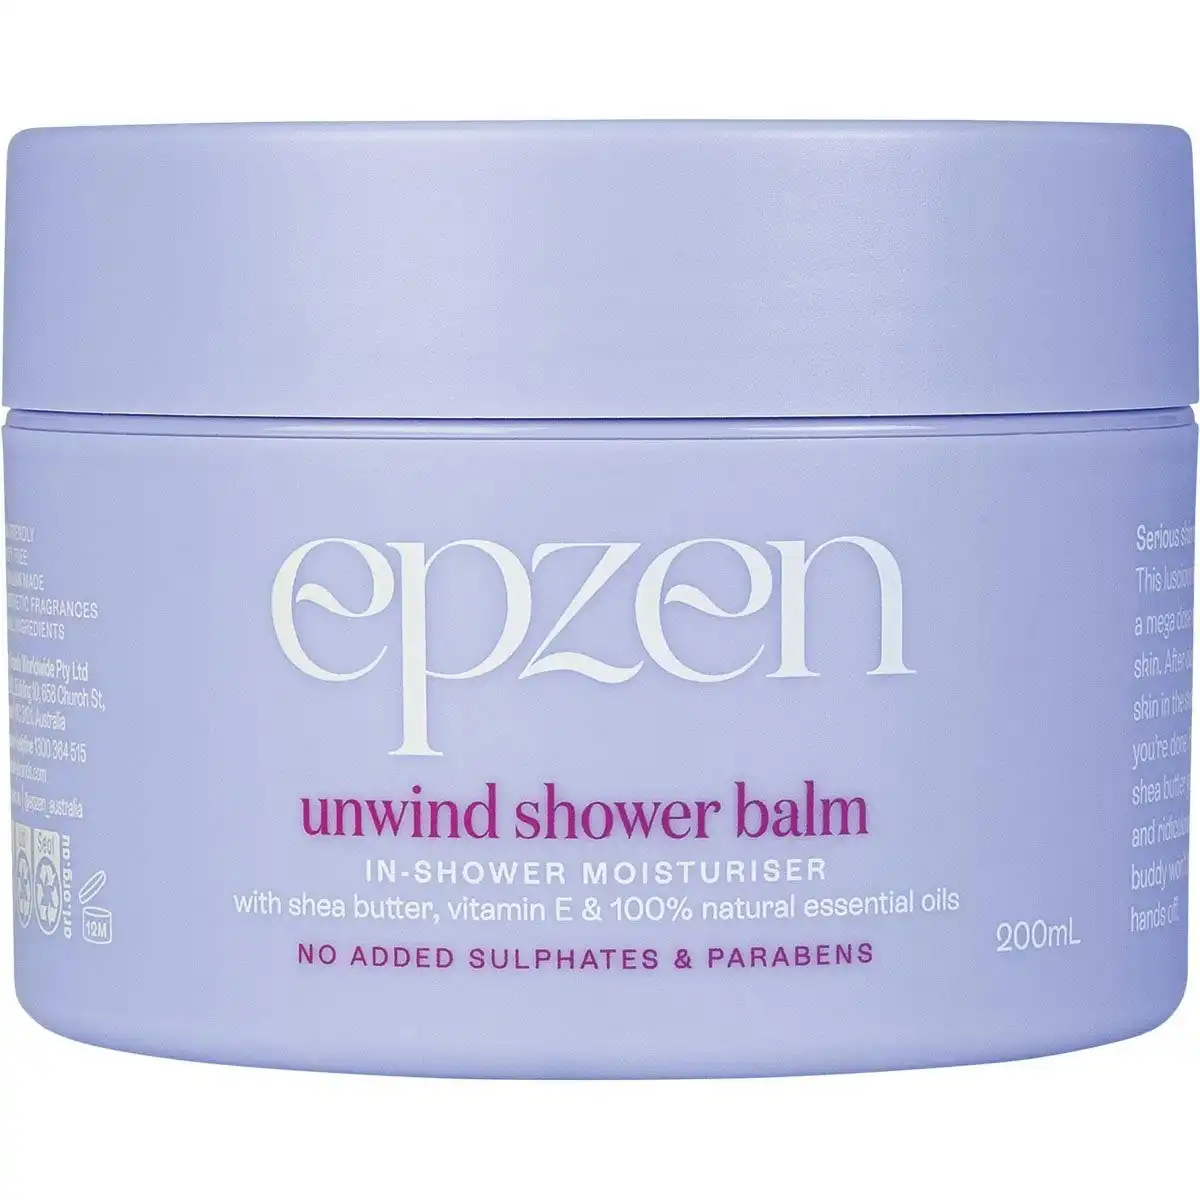 EpZen Unwind Shower Balm In-Shower Moisturiser 200ml